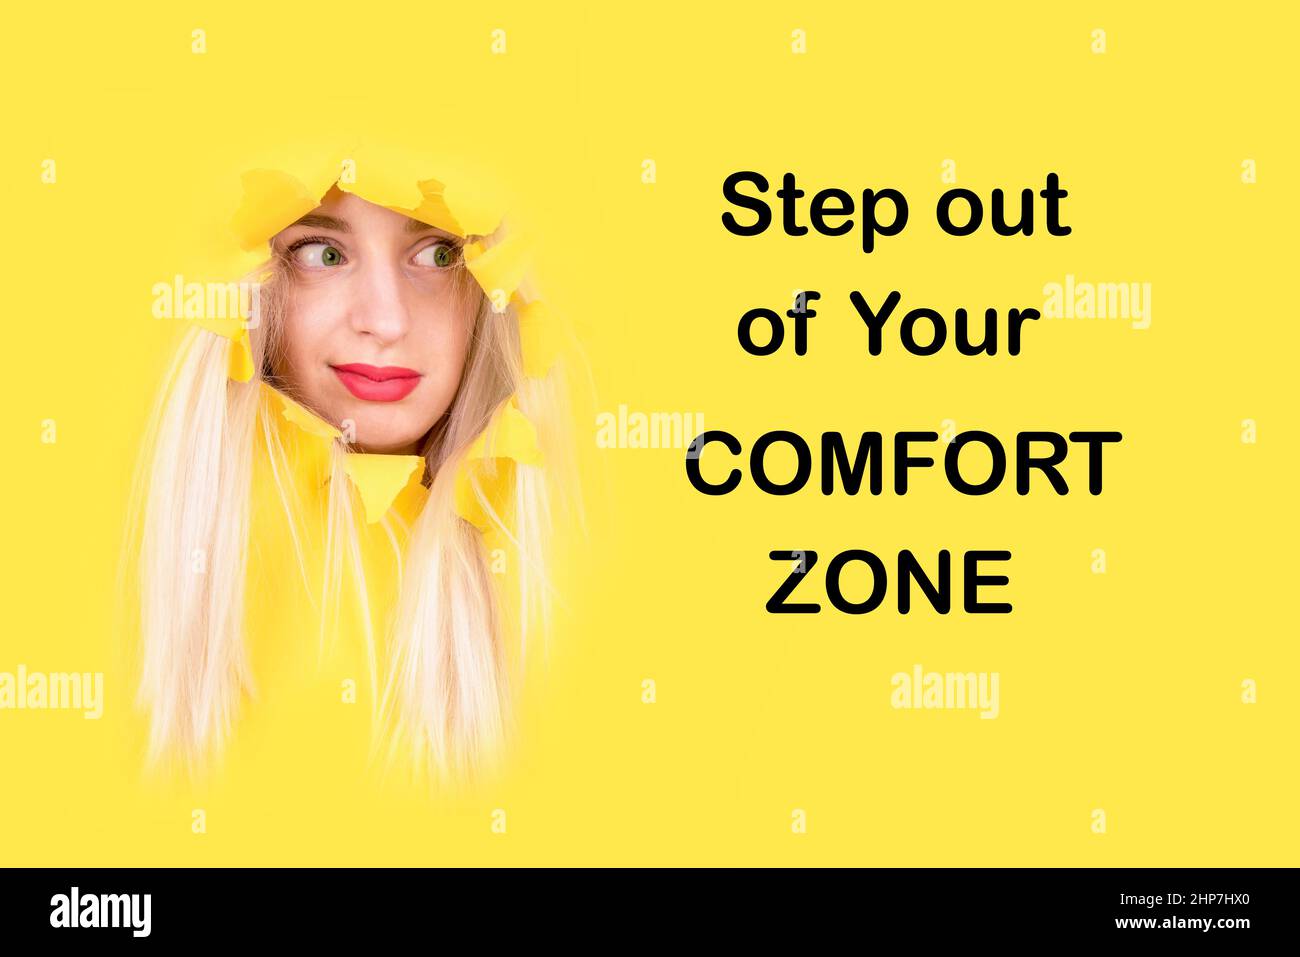 Verlassen Sie Ihre Komfortzone. Lustiges Mädchen mit Ausdruck gucken aus gelben Plakat. Hallenge Motivation Aufruf zum Handeln Stockfoto